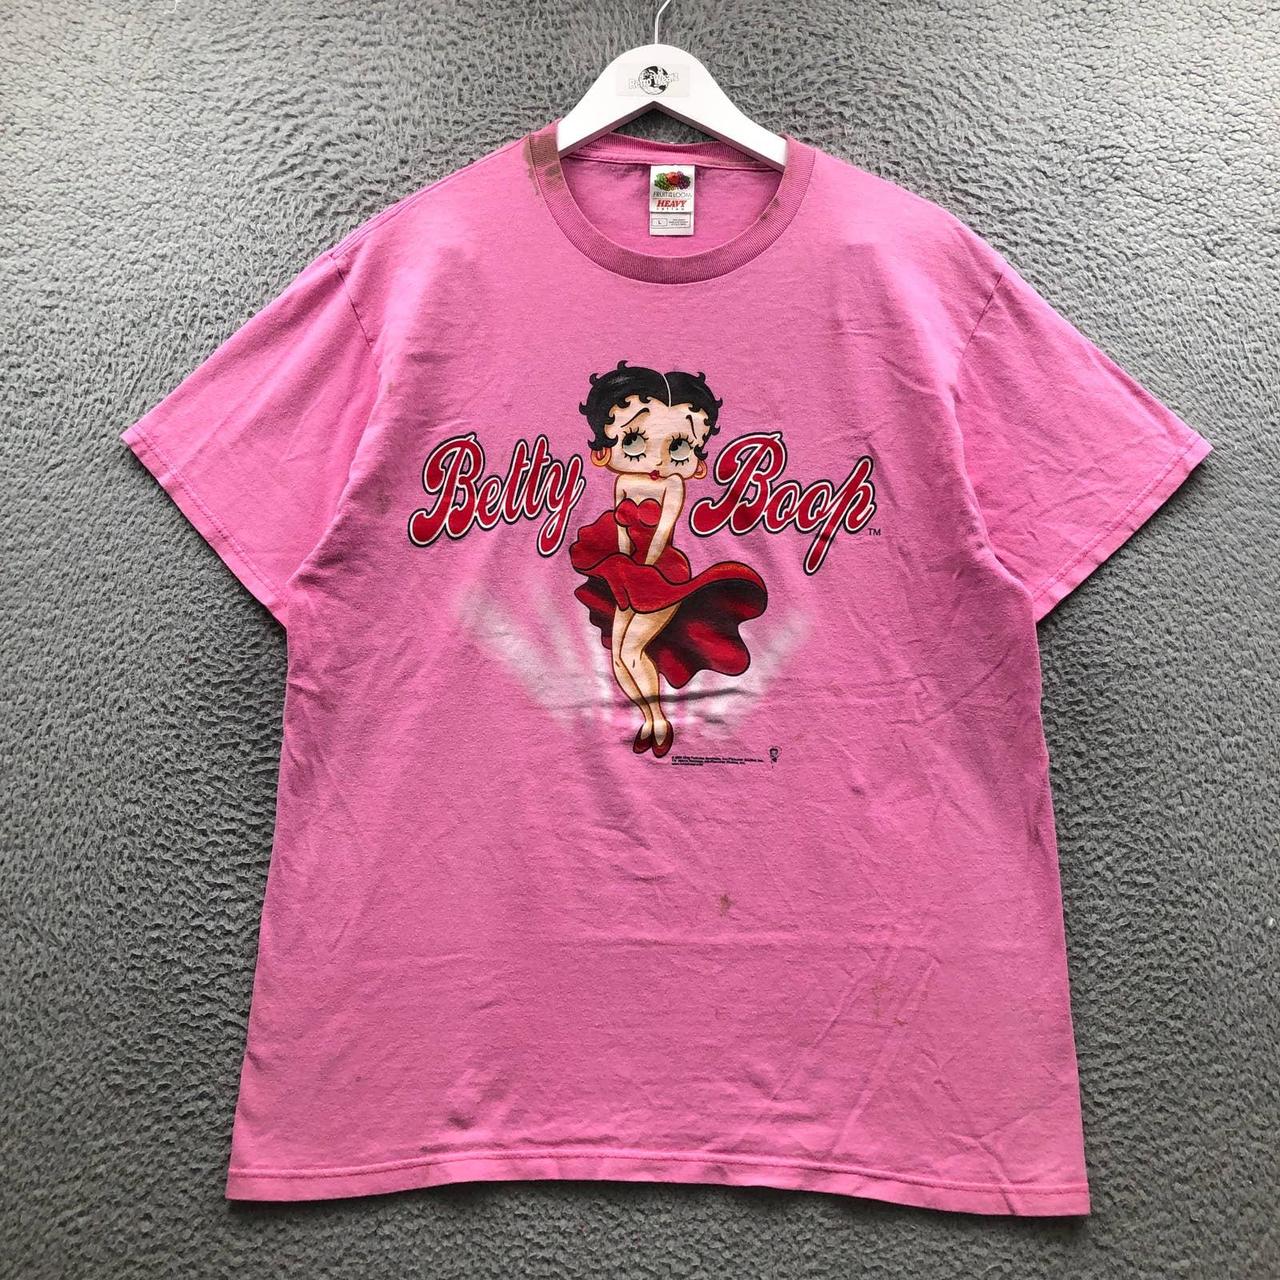 Vintage 2005 Fruit Of The Loom Betty Boop T-Shirt... - Depop